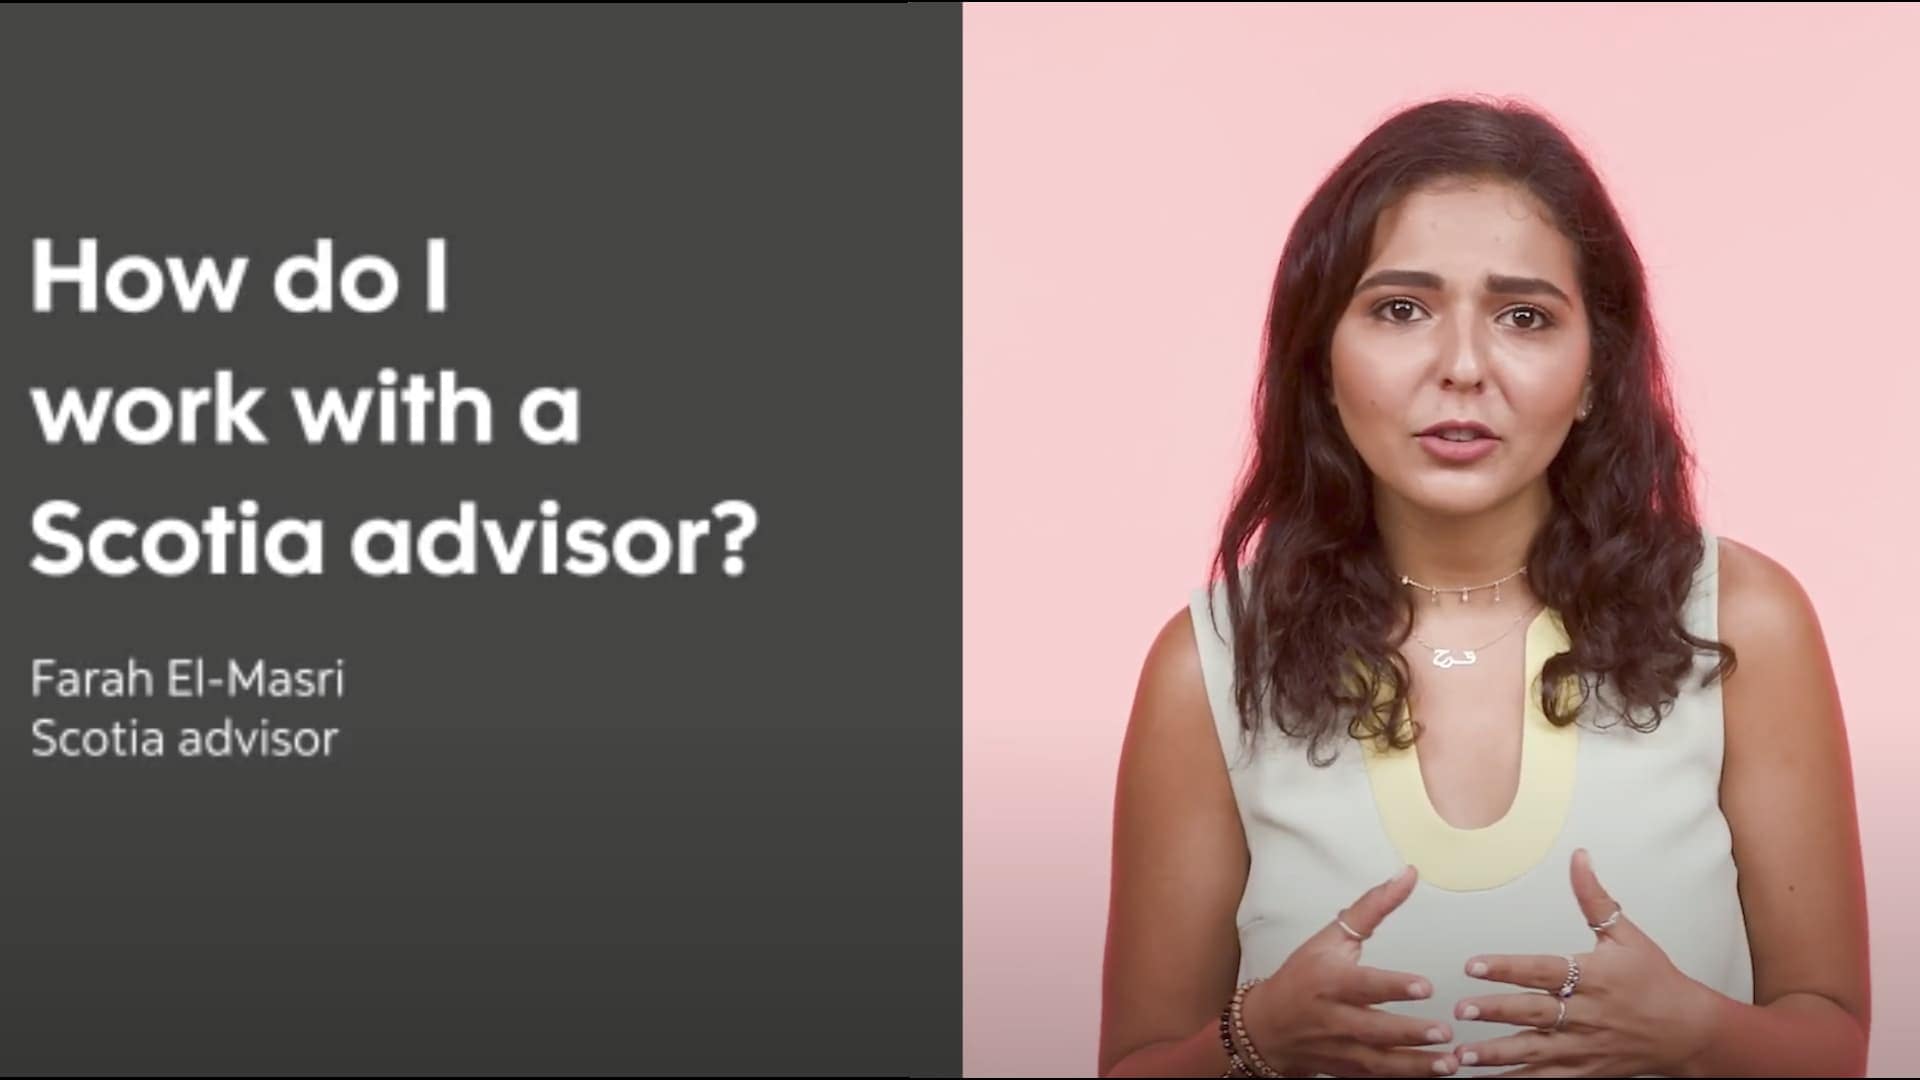 How do I work with a Scotia advisor? Farah El-Masri, Scotia advisor